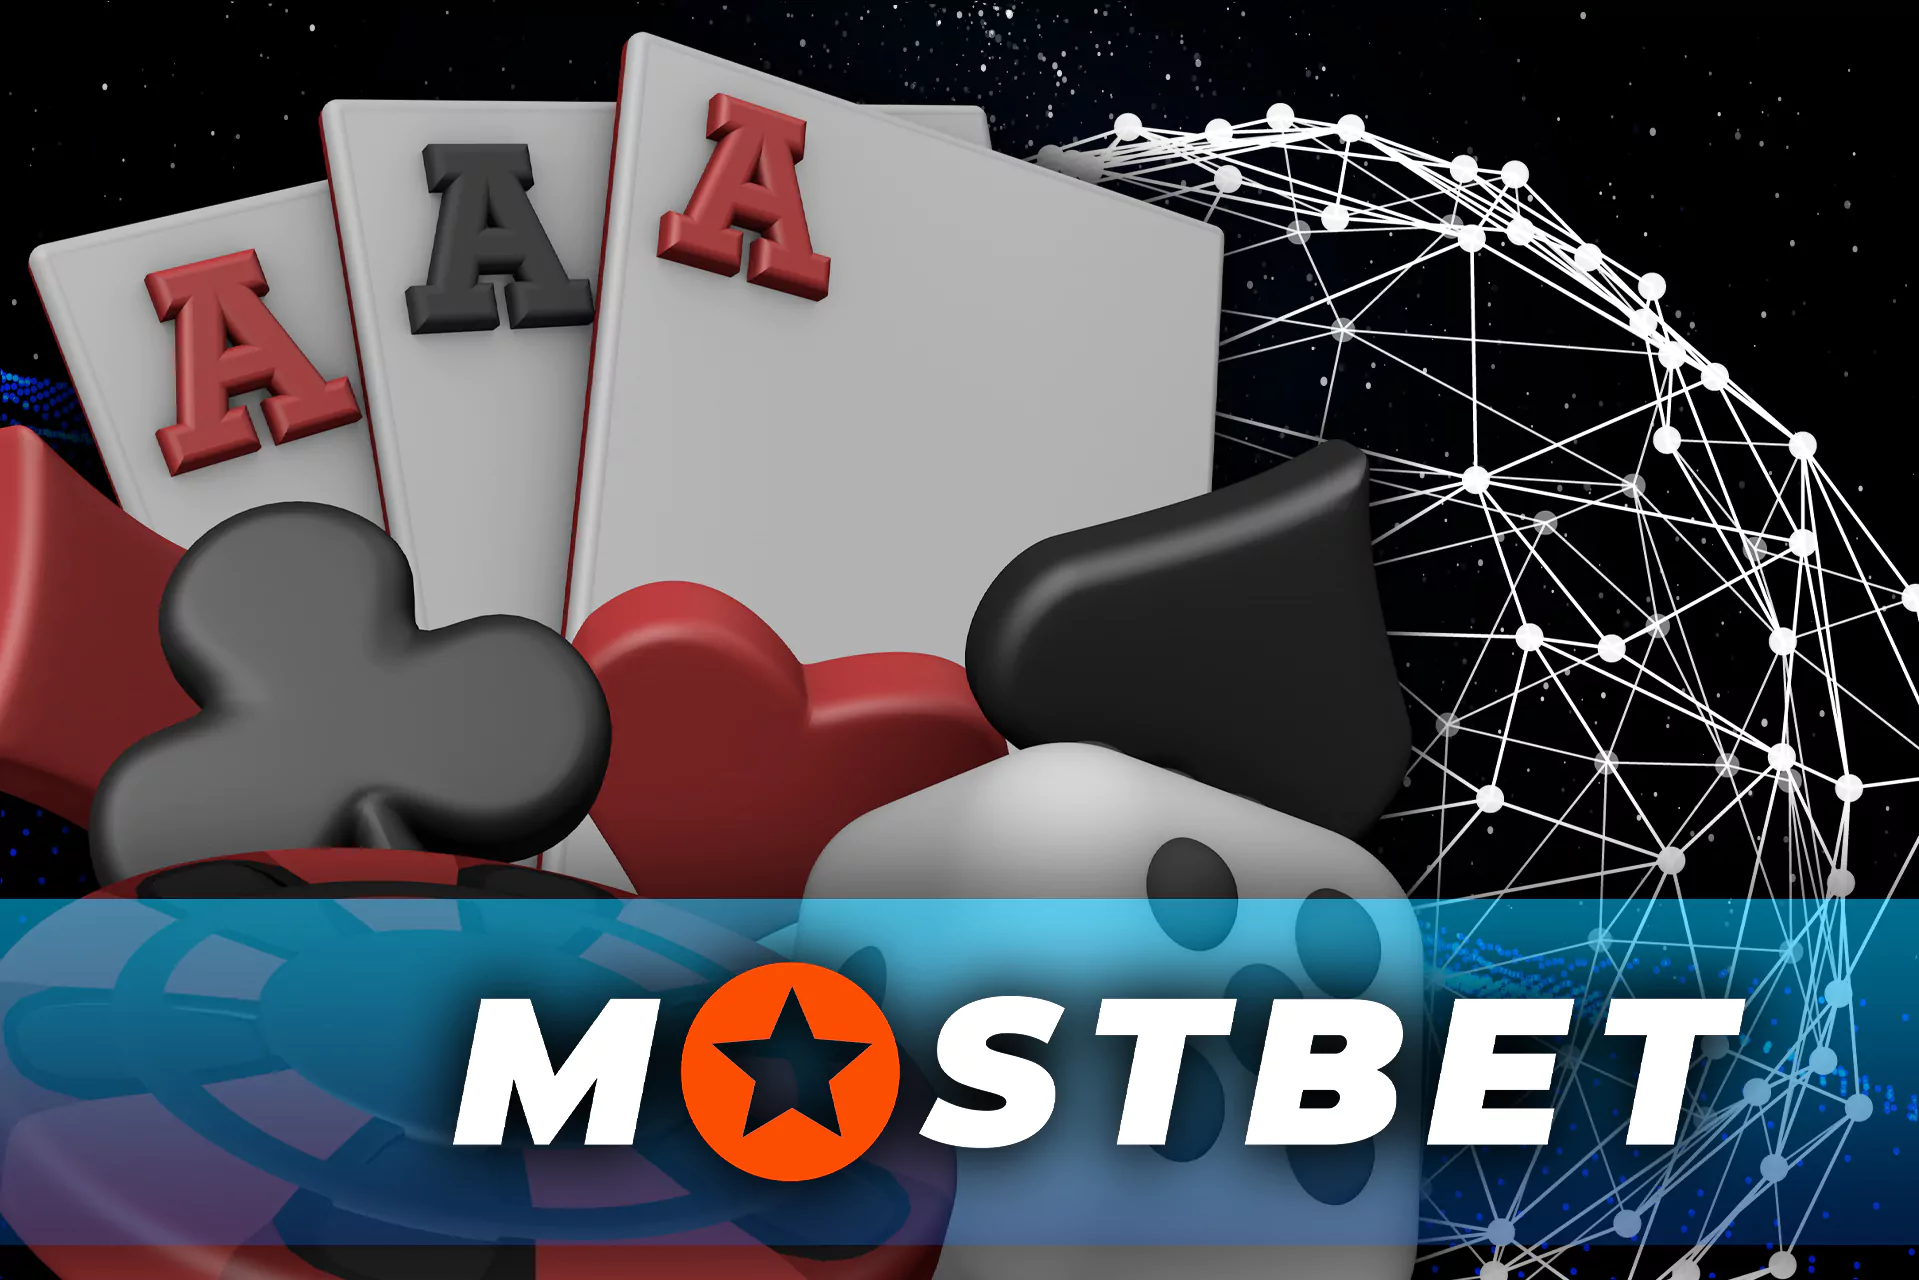 Cards for Blackjack at Mostbet.